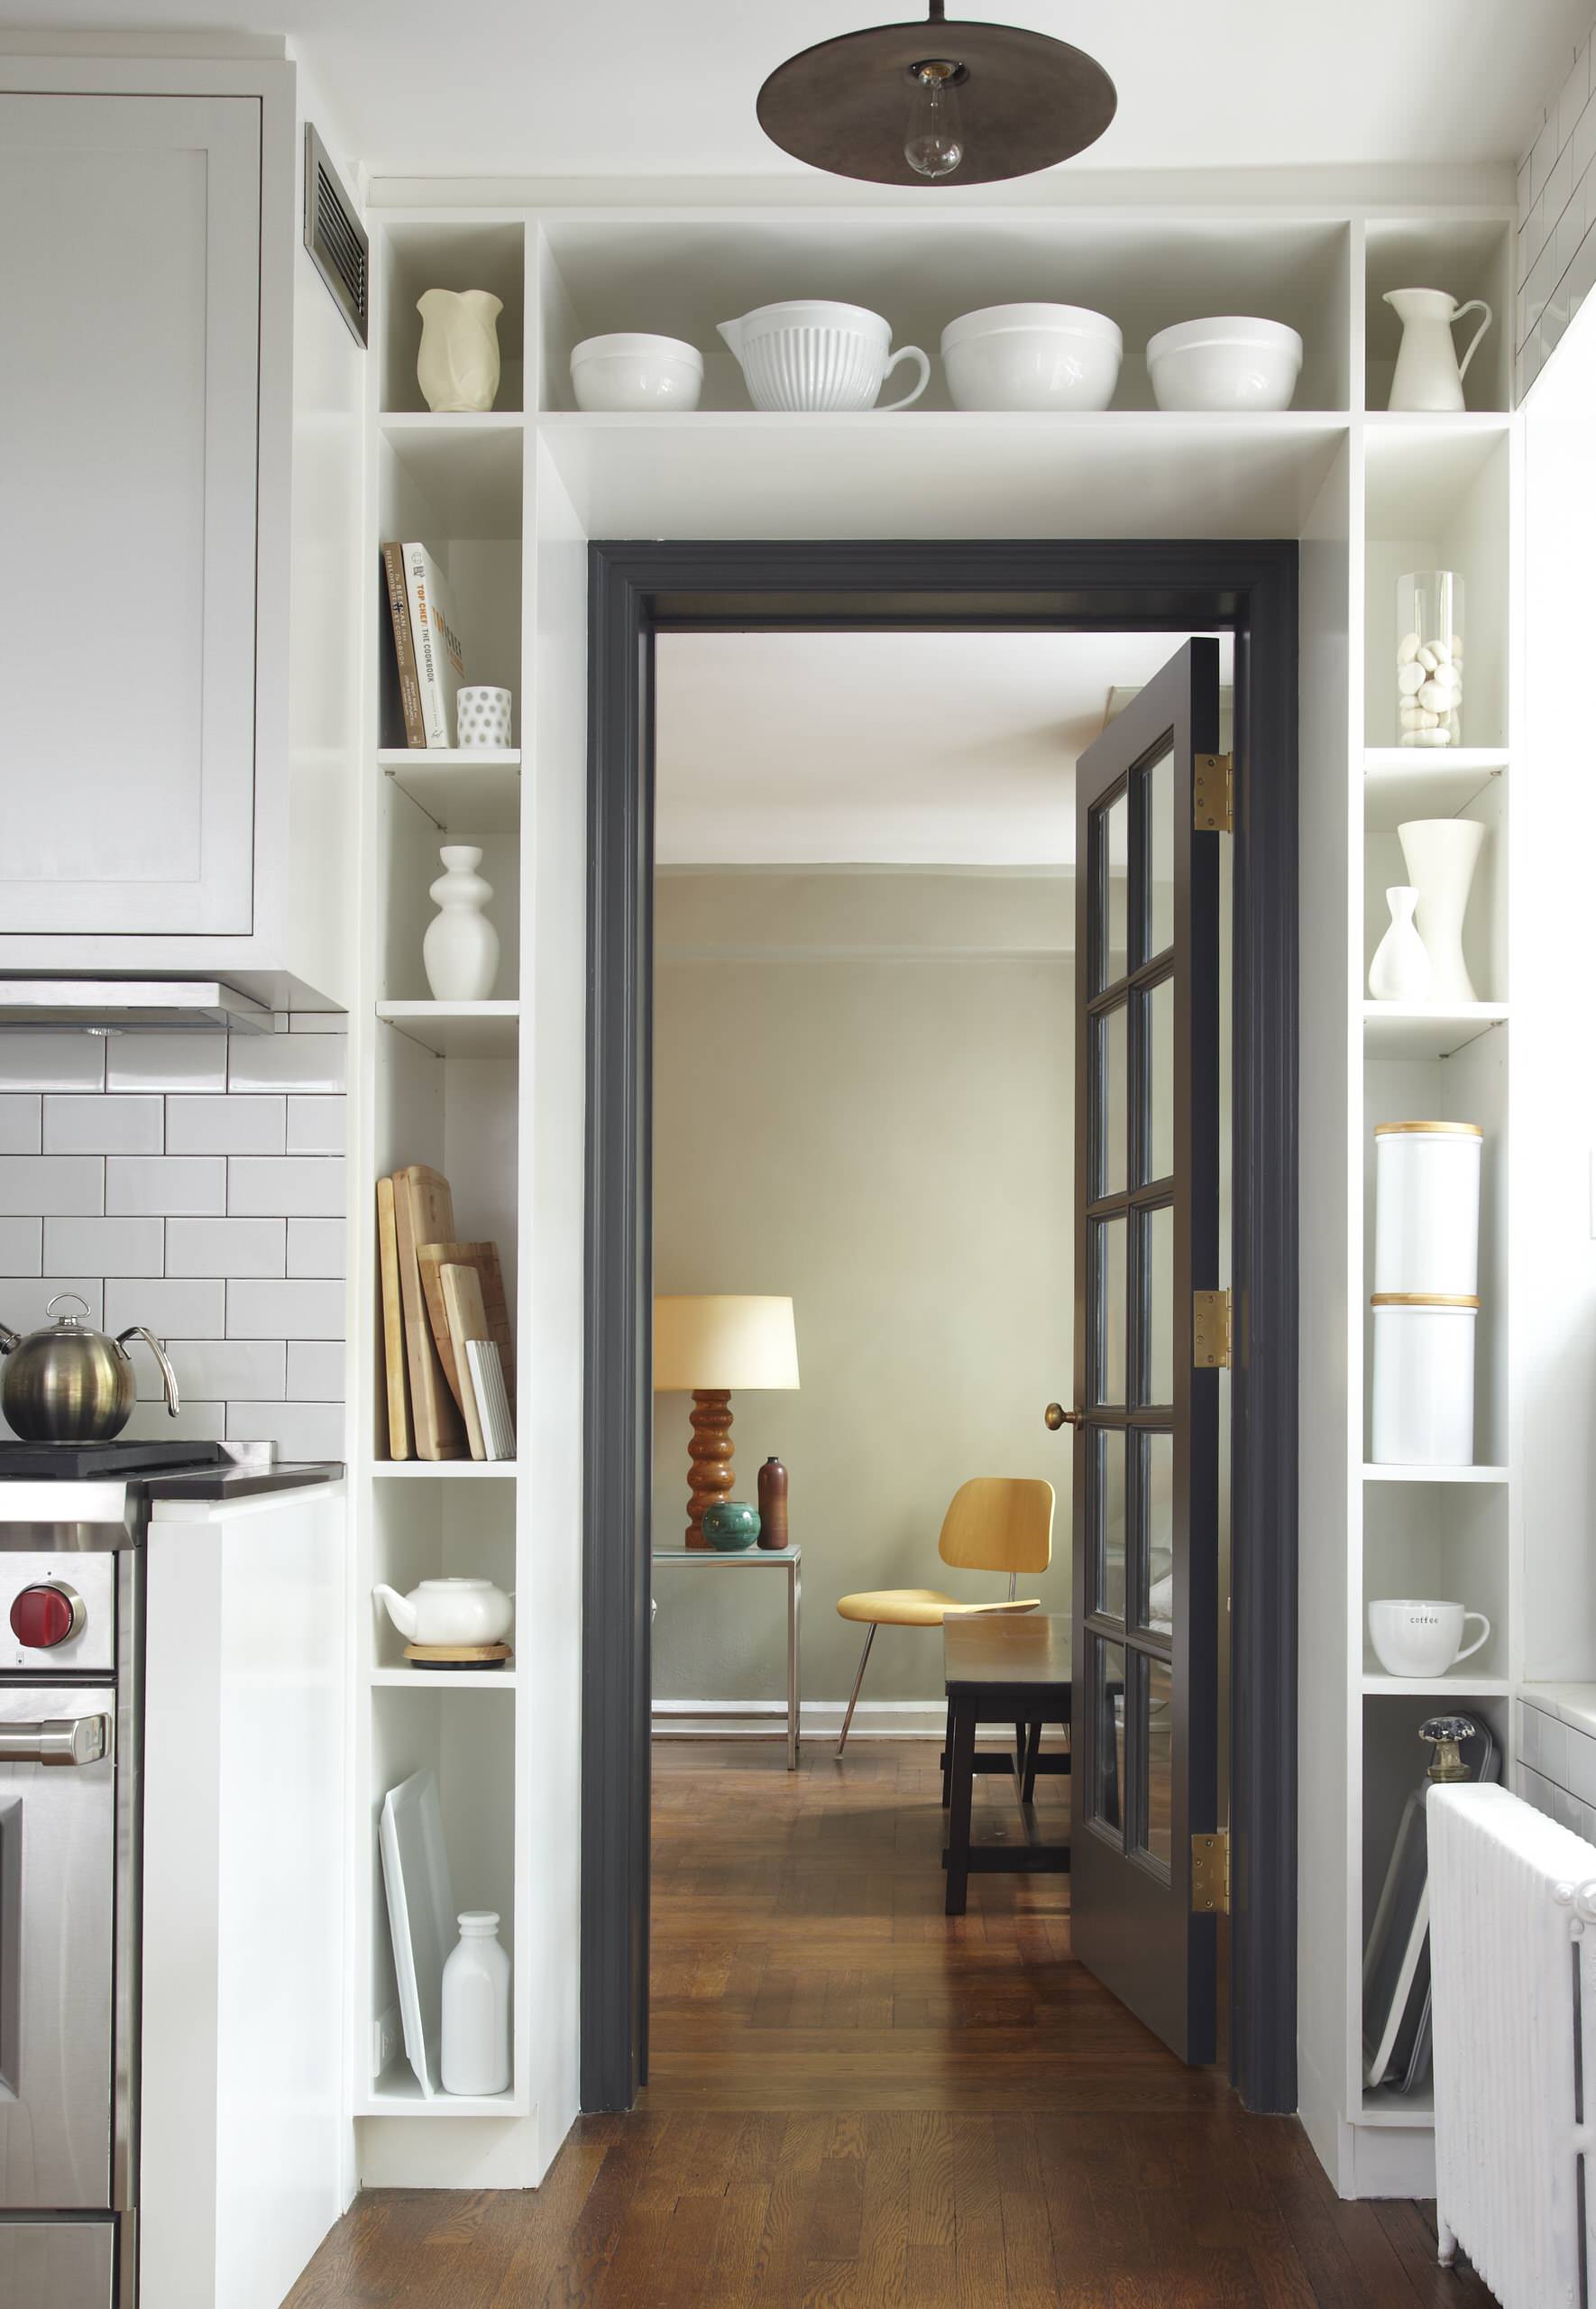 Дверь в маленькой квартире. Дизайнерские решения для маленьких квартир. Интересные идеи для интерьера квартиры. Интерьер кухни с дверью. Идеи для маленькой квартиры.